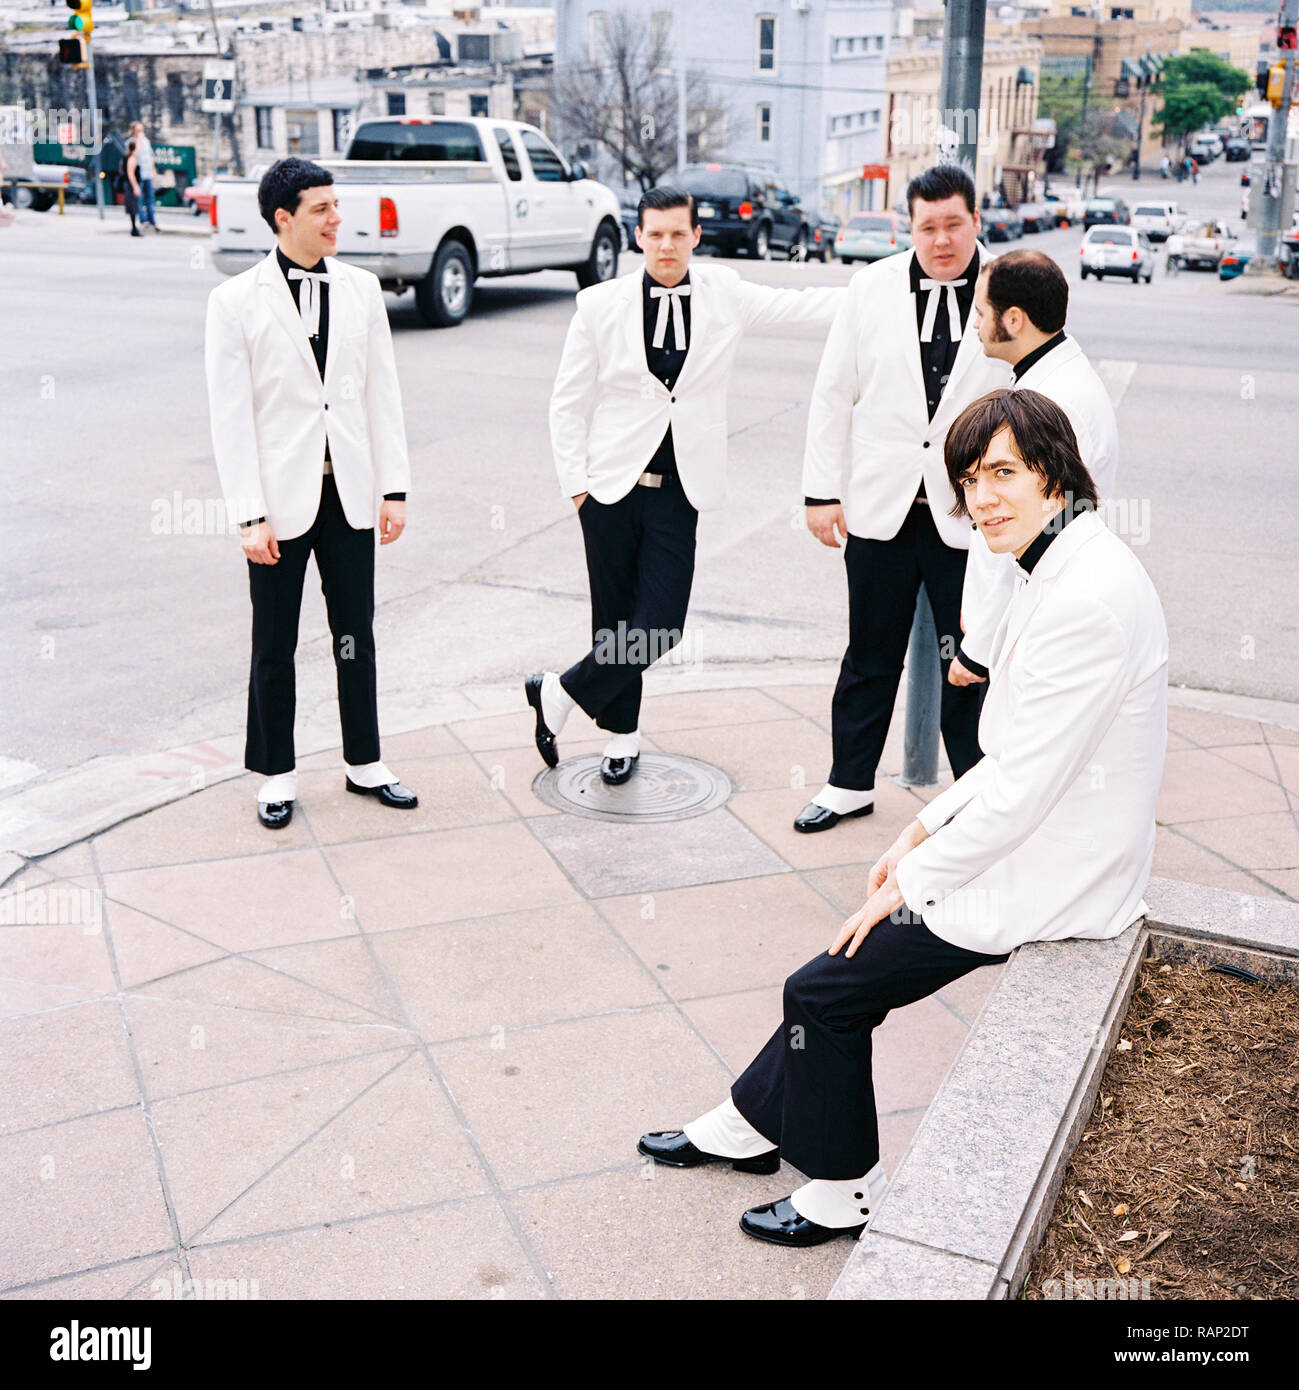 Les Ruches d'un groupe de rock suédois, photographié à Austin, Texas, États-Unis d'Amérique. Banque D'Images